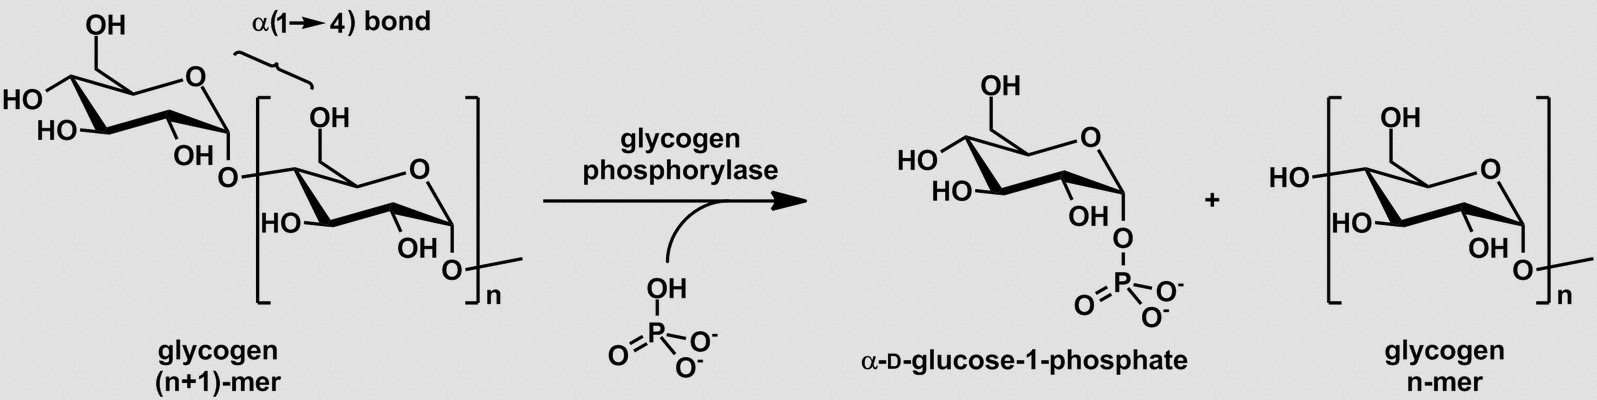 Glycogen phosphorylase photo